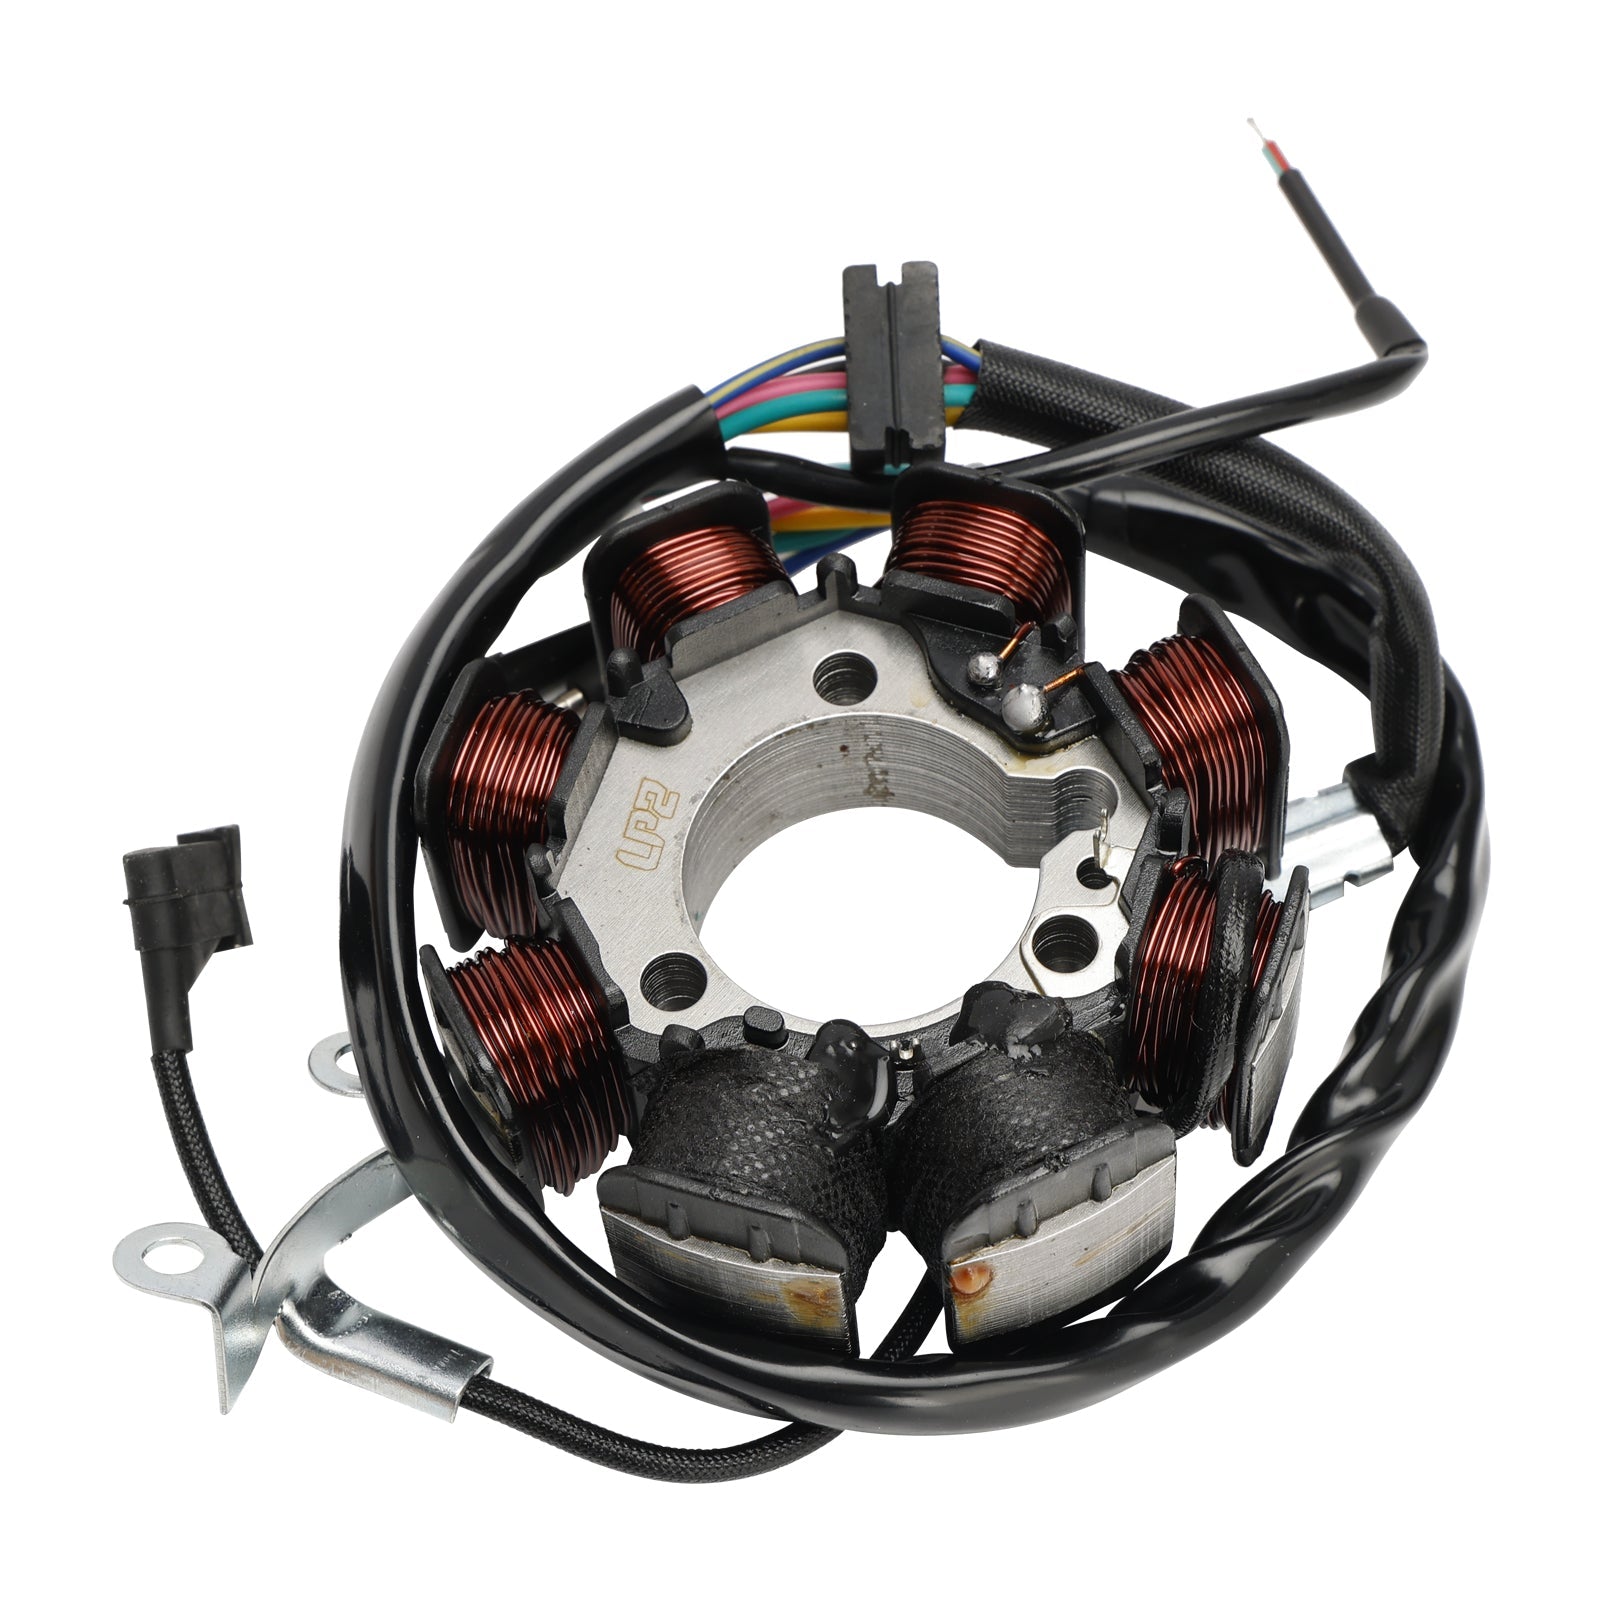 Stator de bobine magnétique + régulateur de tension + joint Assy pour Honda NX 200 XL 200 CTX 200 XR 200 R